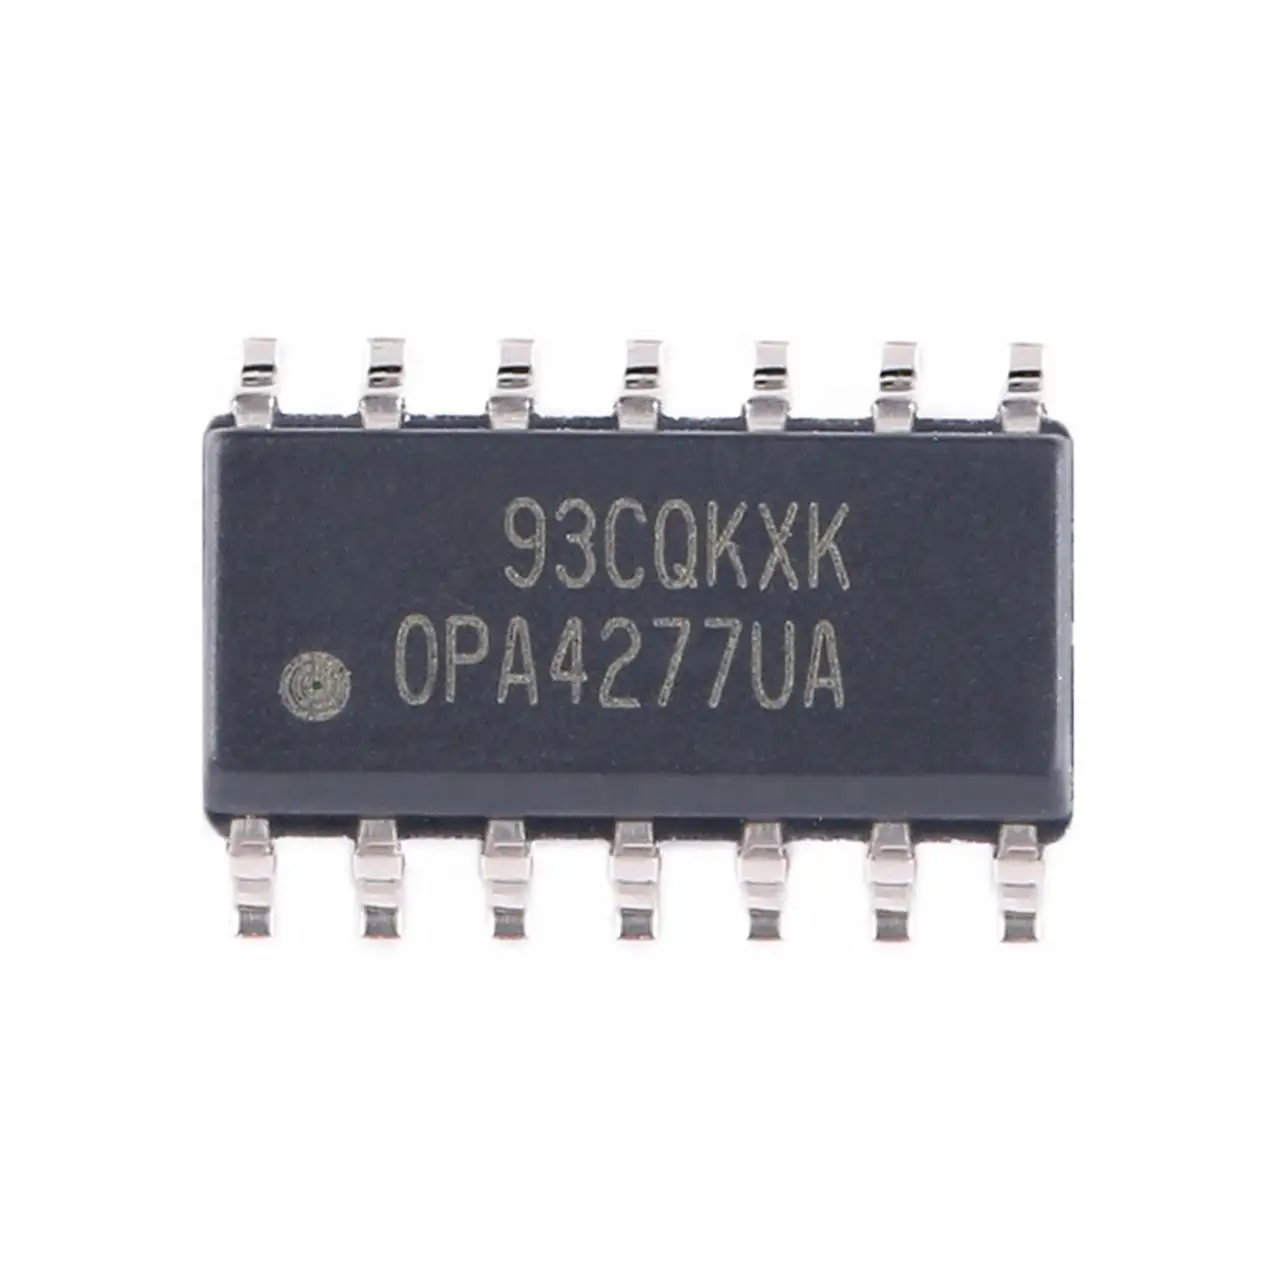 Componente eletrônico original da placa PCBA do circuito integrado OPA4277UA Power Mcu ICs Chip Fornecedor Distribuidor Lista BOM Parte